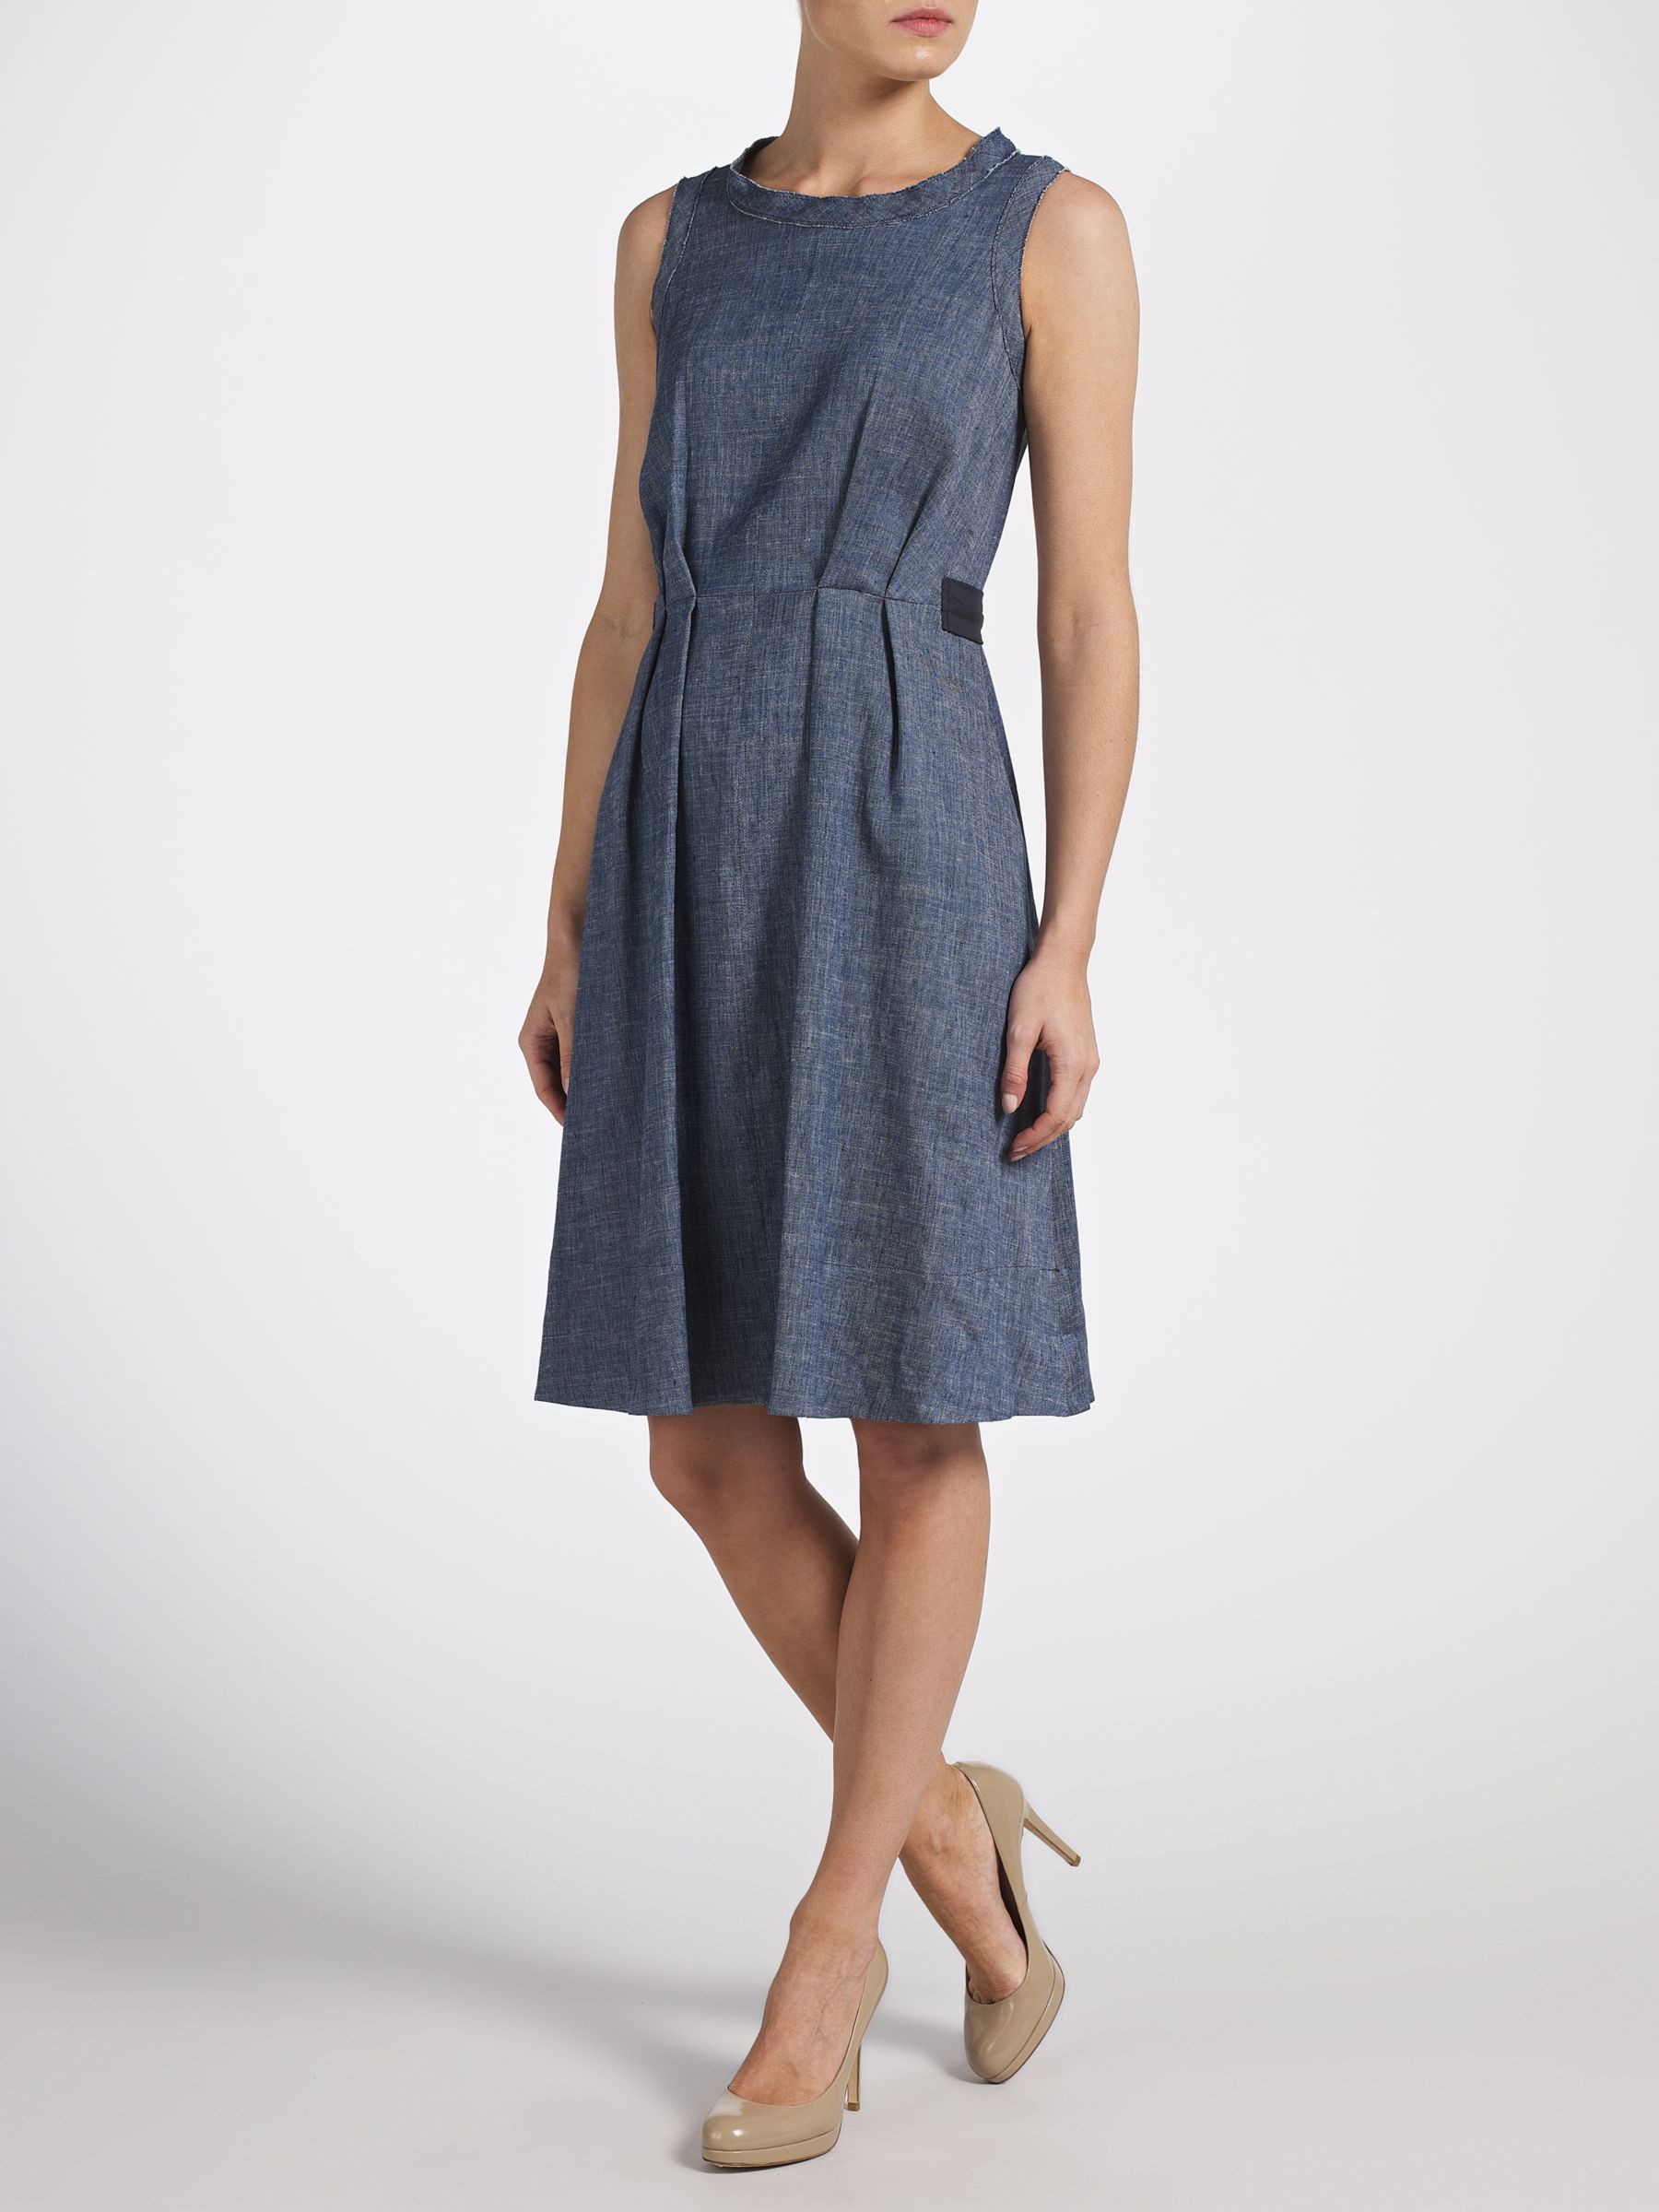 Marella Linen Blend Fibbia Denim Dress, Blue at John Lewis & Partners